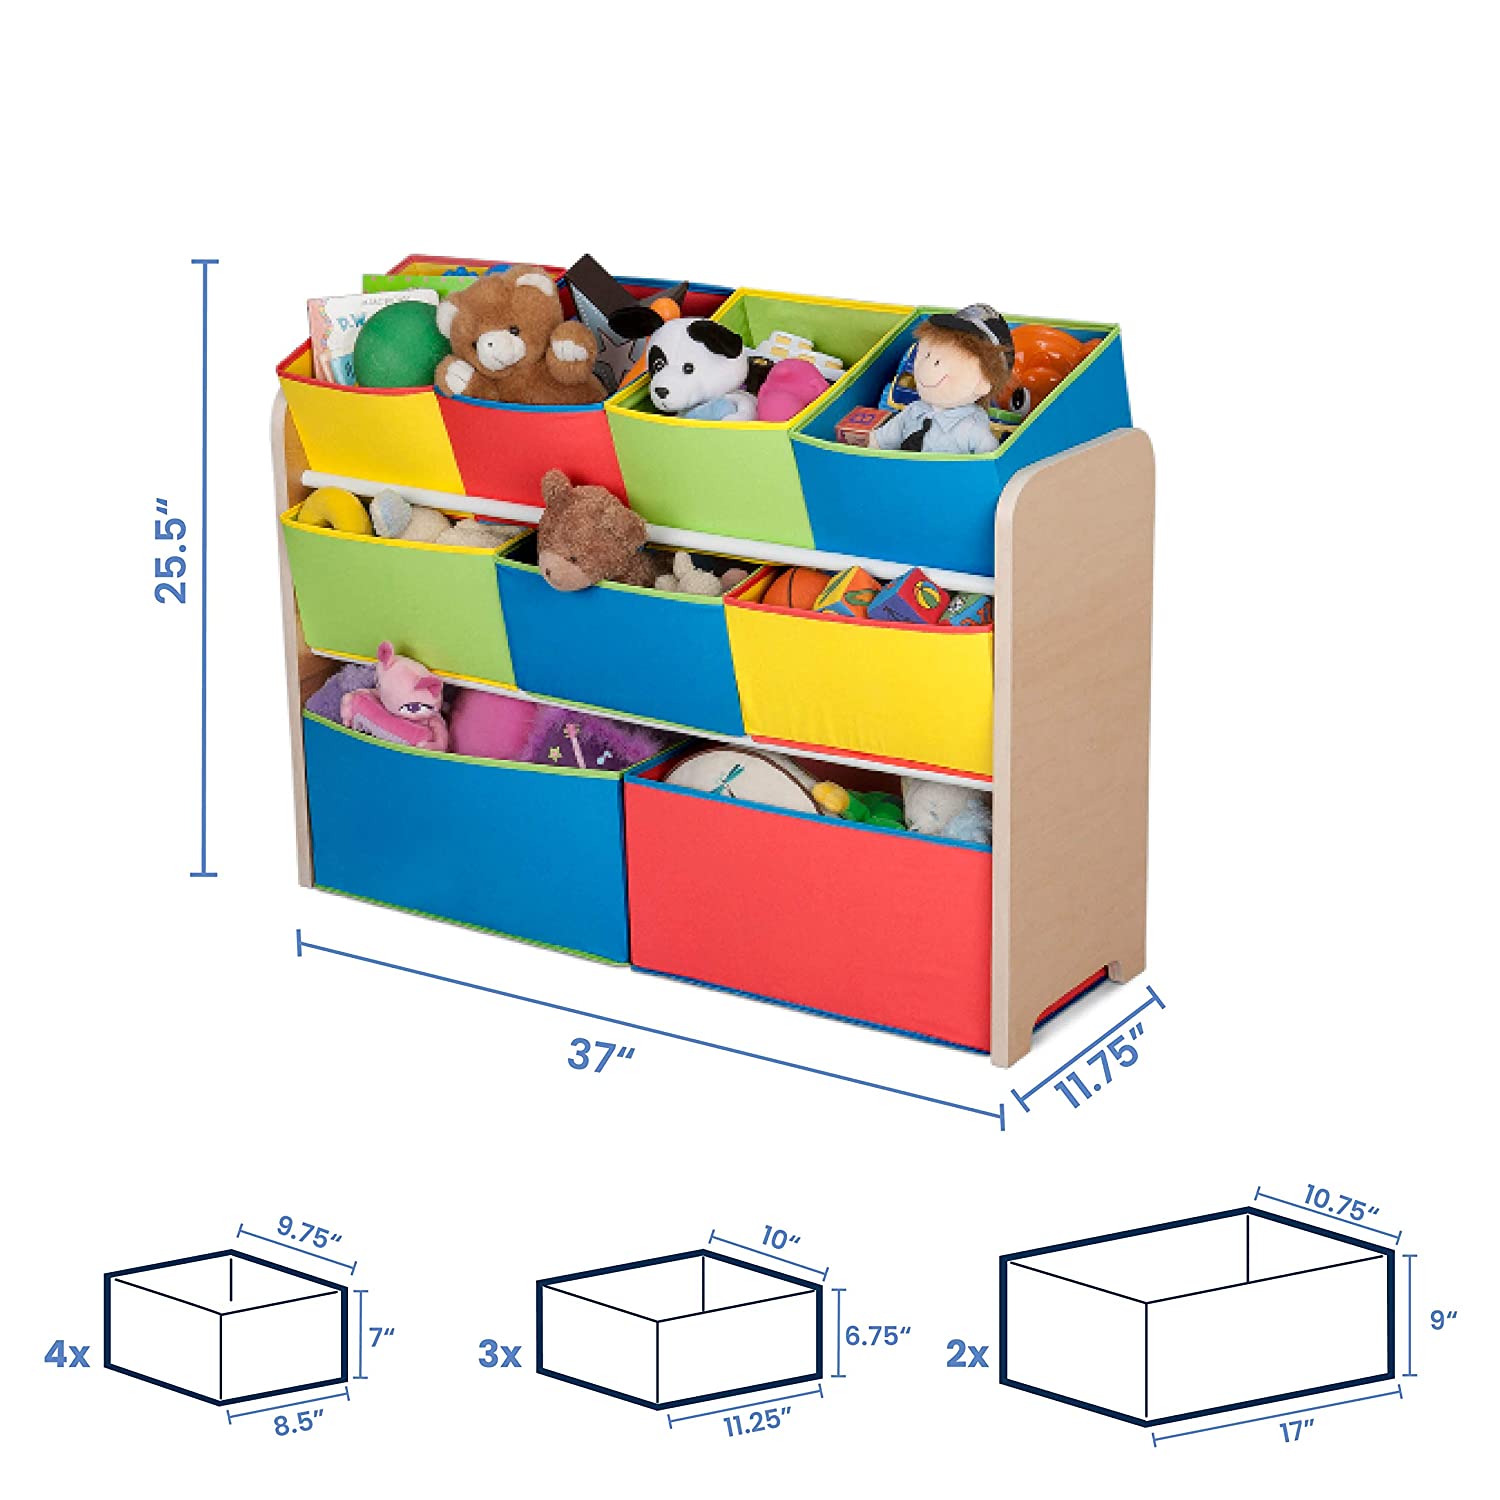 Delta Children Deluxe 9-Bin Toy Storage Organizer, Natural/Primary